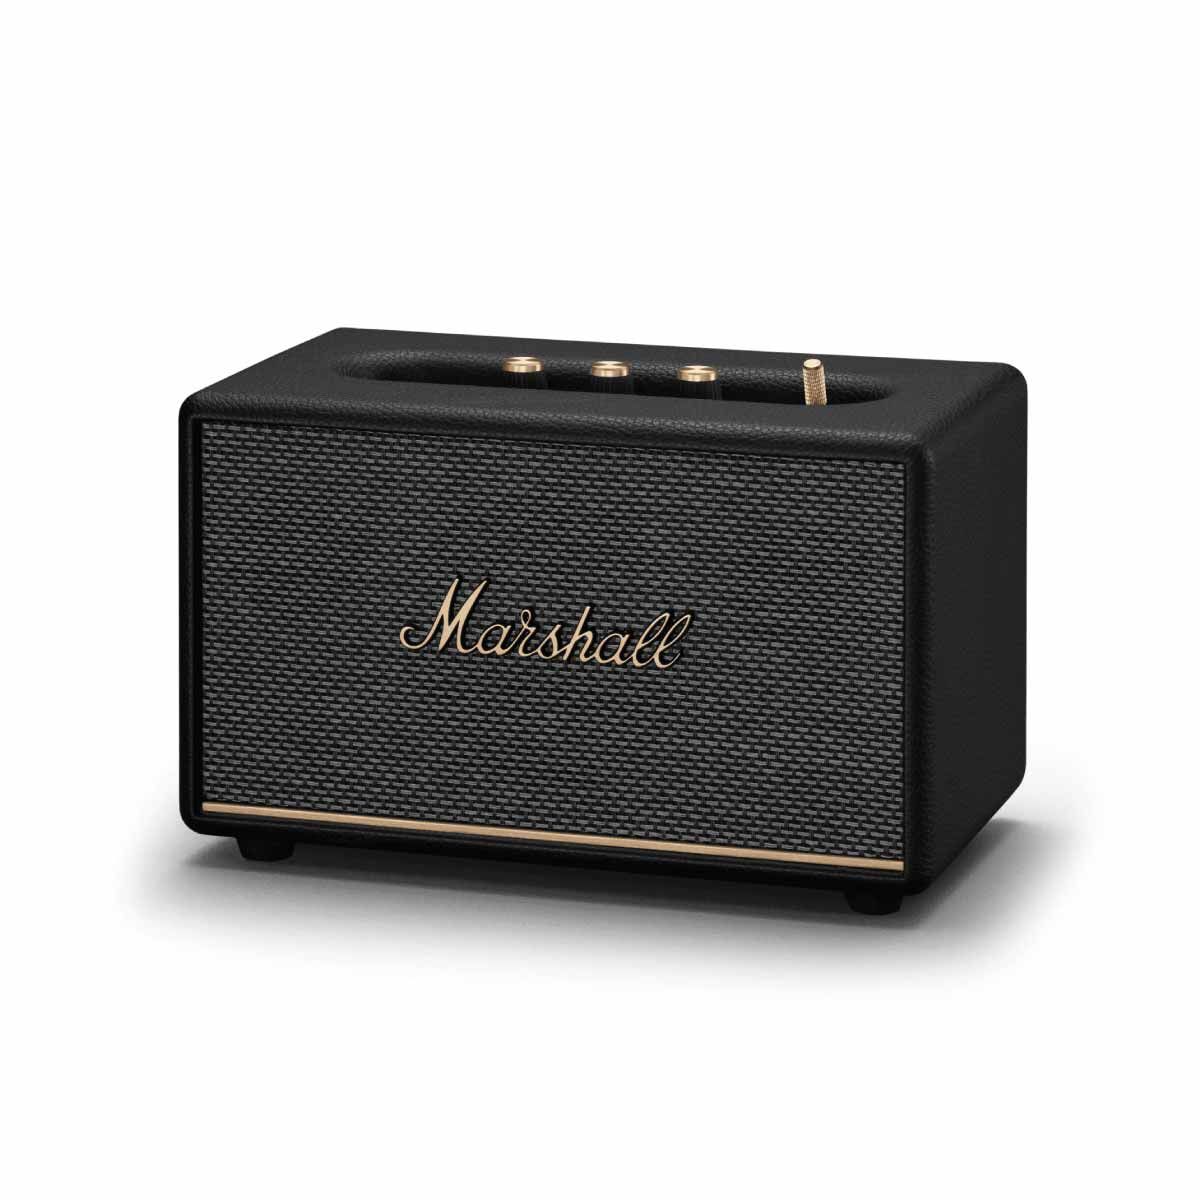 MARSHALL ACTON III ลำโพง Bluetooth รุ่น ACTON III Bluetooth Speaker